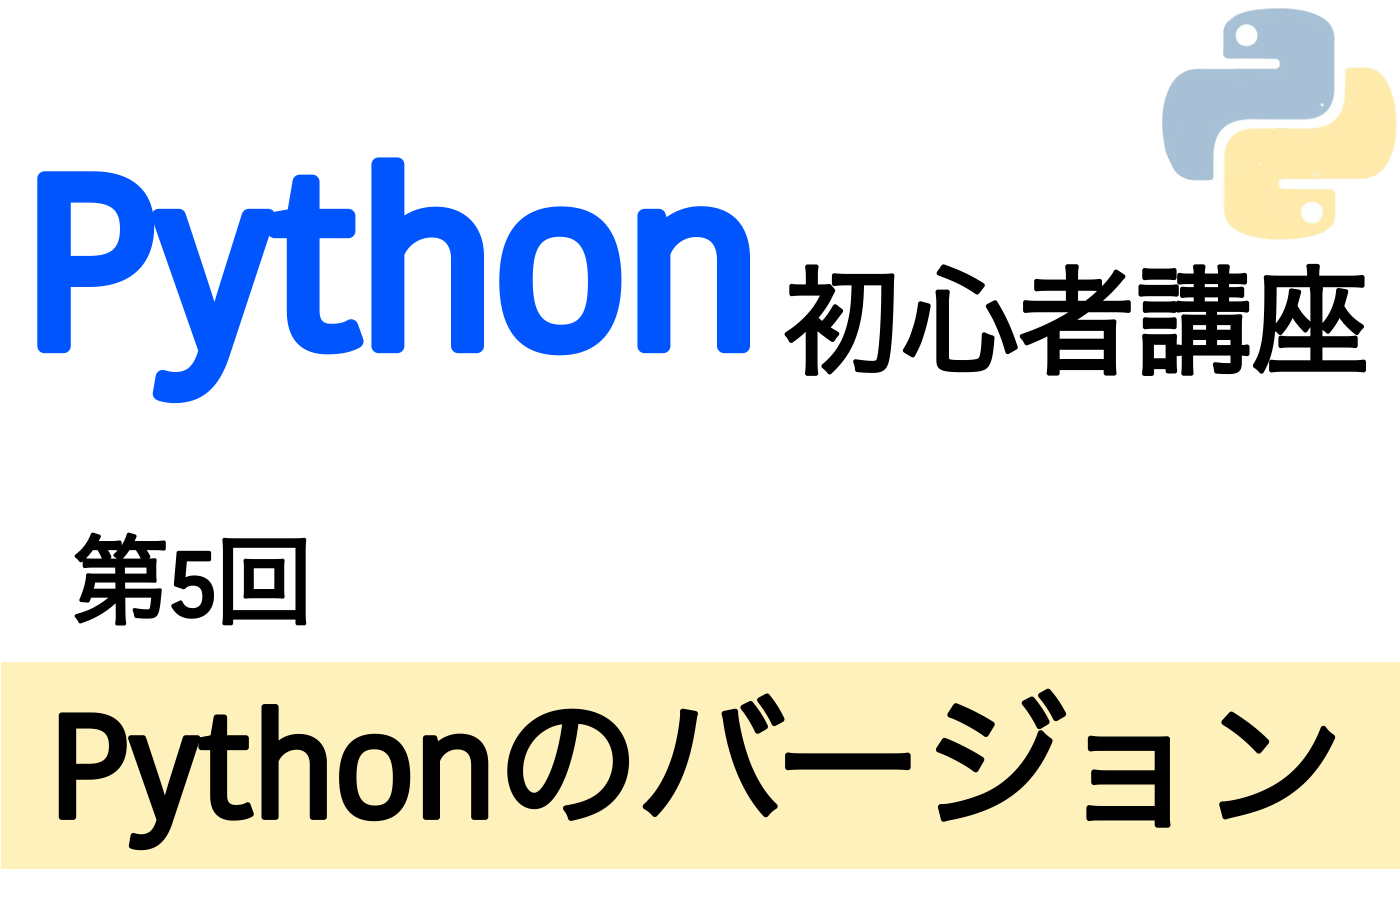 Pythonのバージョンのサムネイル